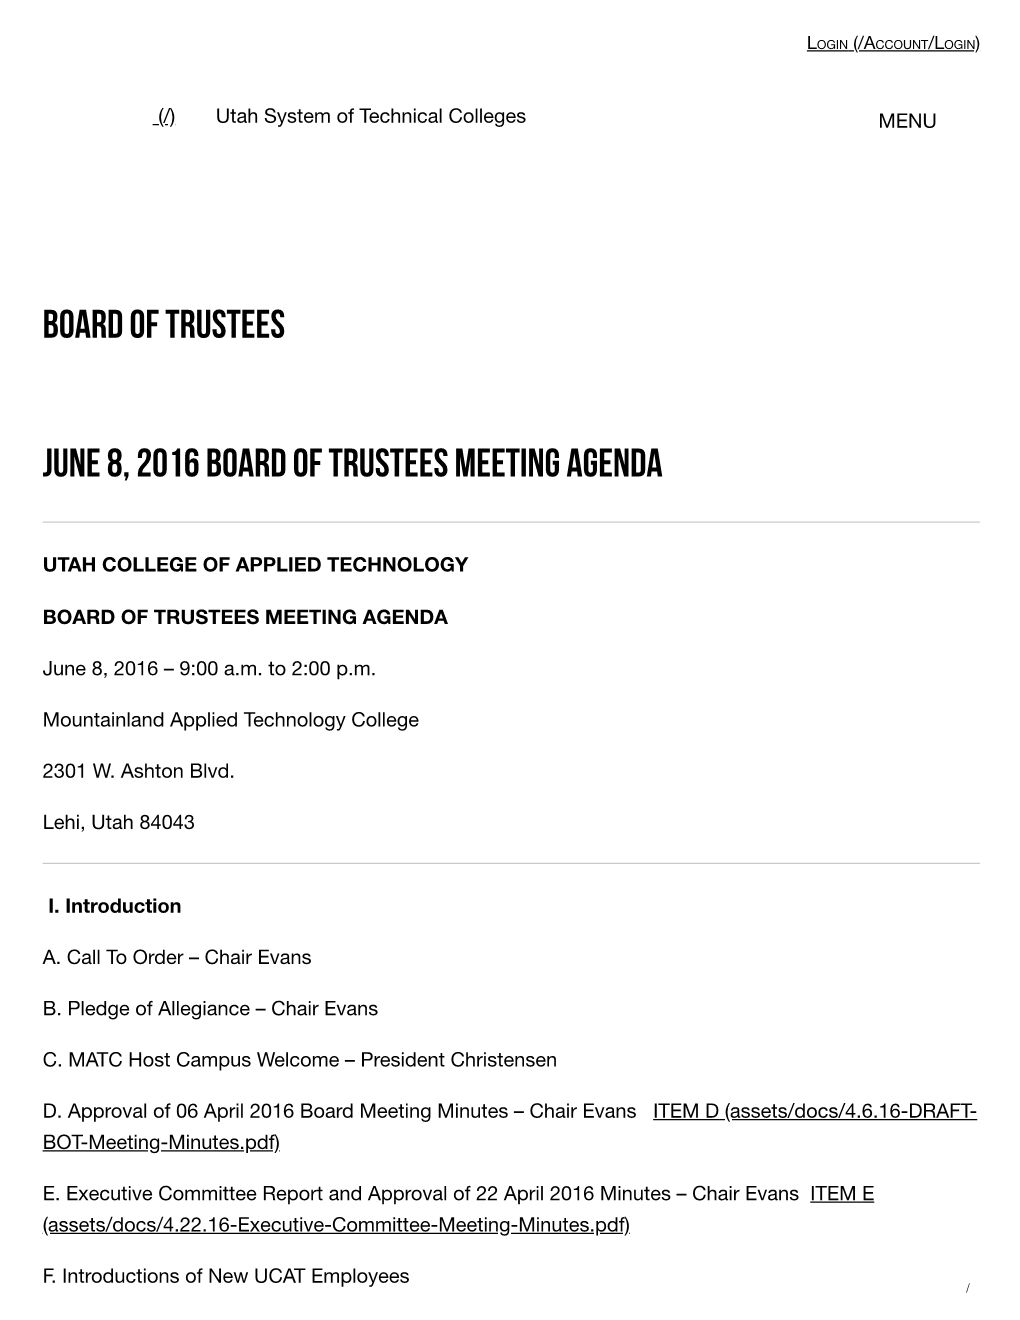 Board of Trustees June 8, 2016 Board